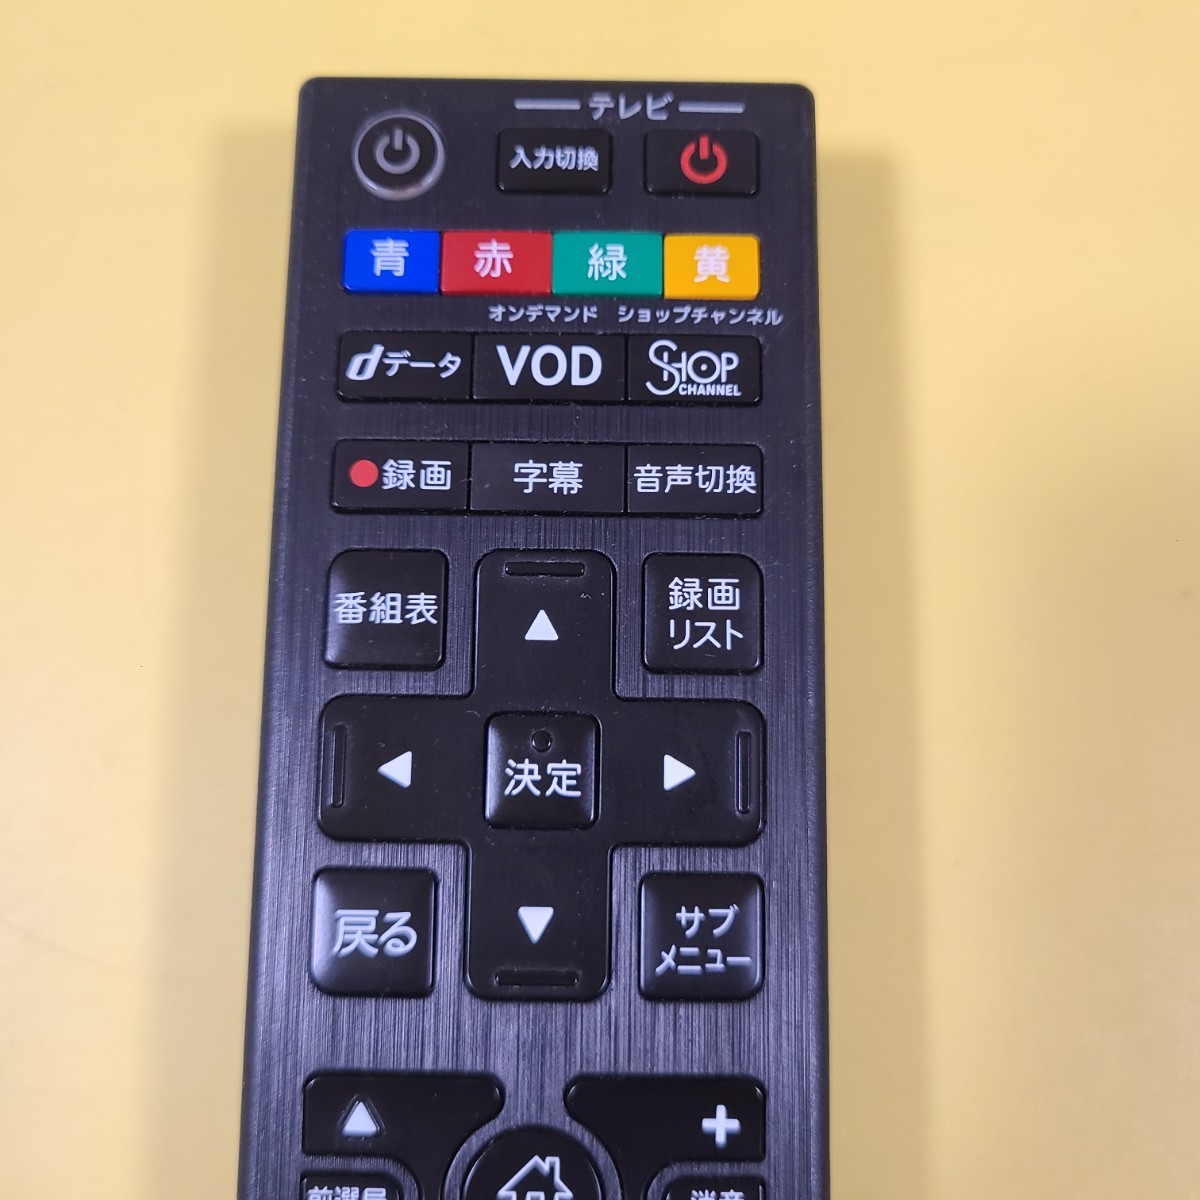 **J:COM телевизор дистанционный пульт 060-236500020 электризация только подтверждено стоимость доставки 185 иен ~**